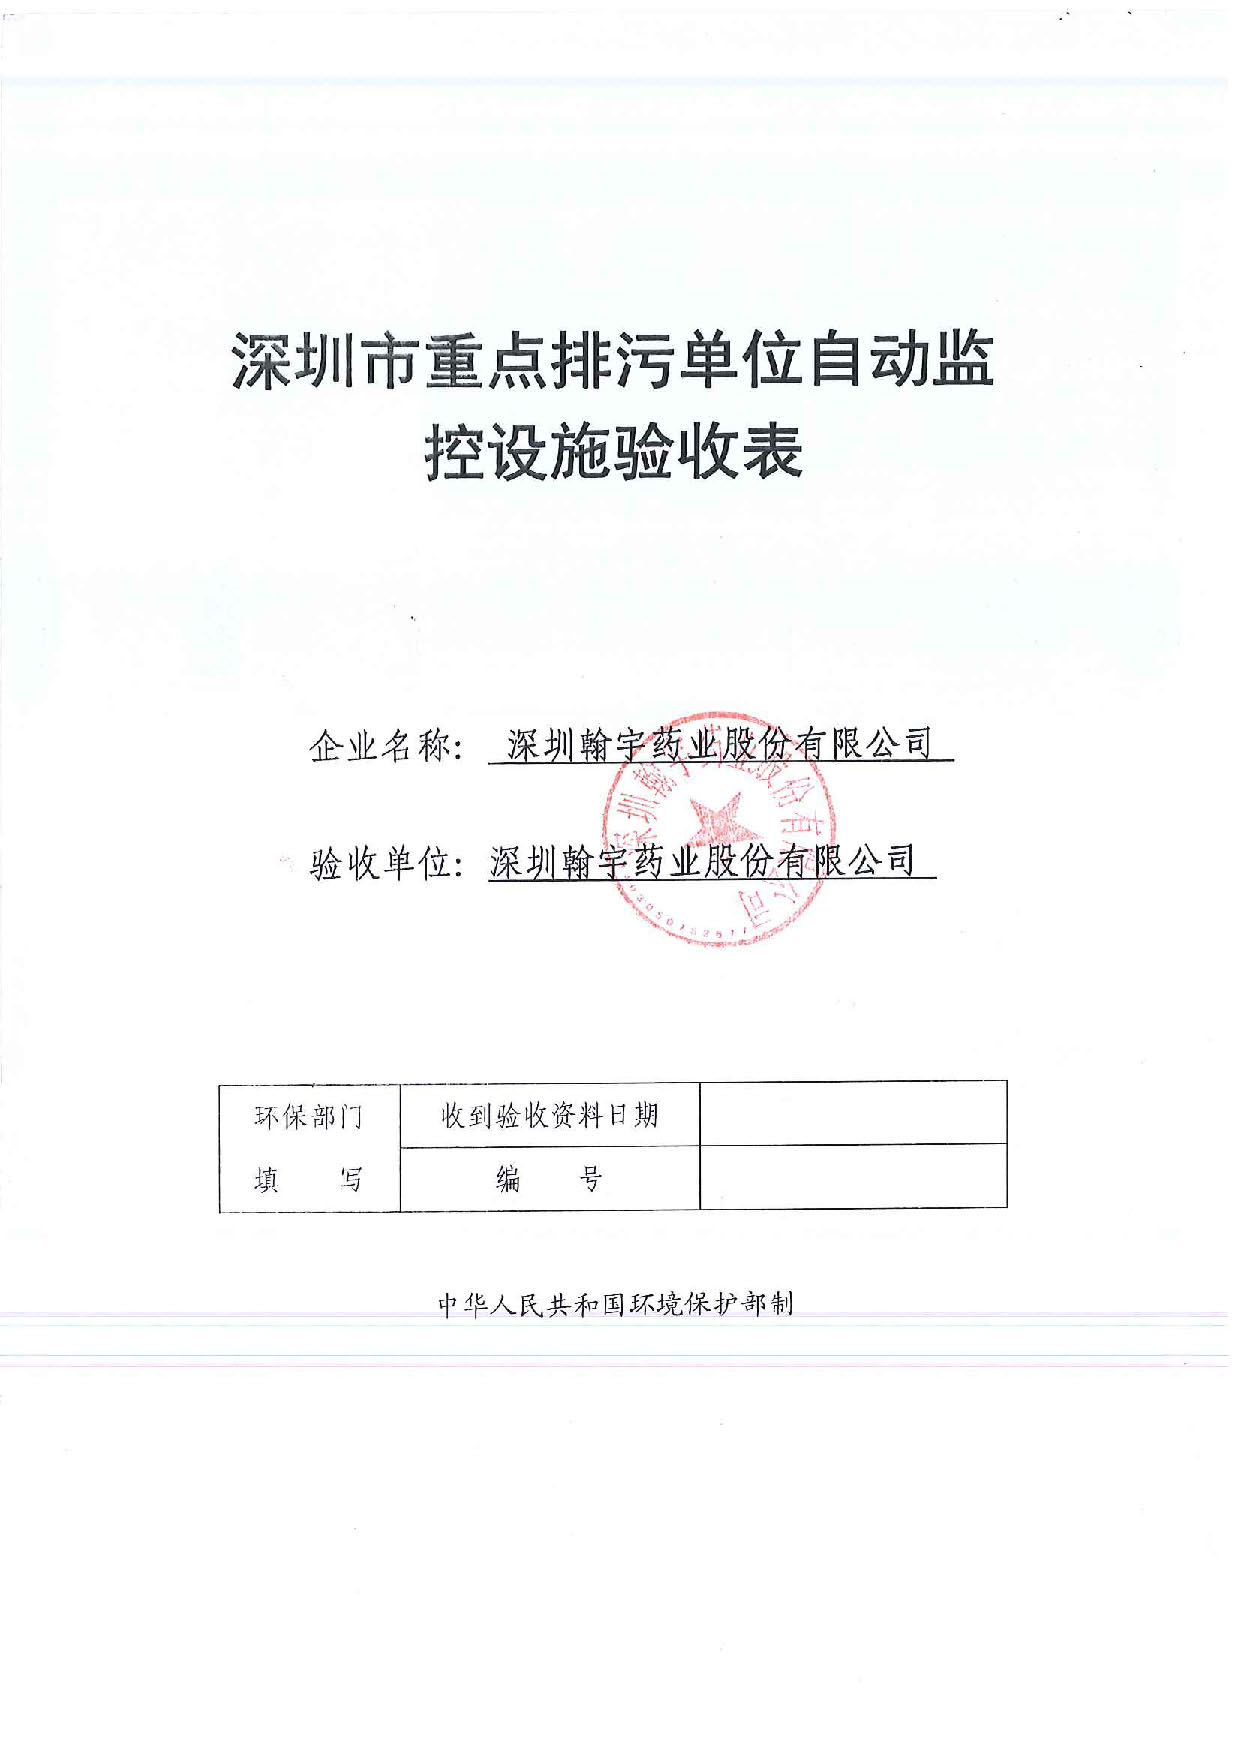 深圳市重点排污单位自动监控设施验收表_页面_01